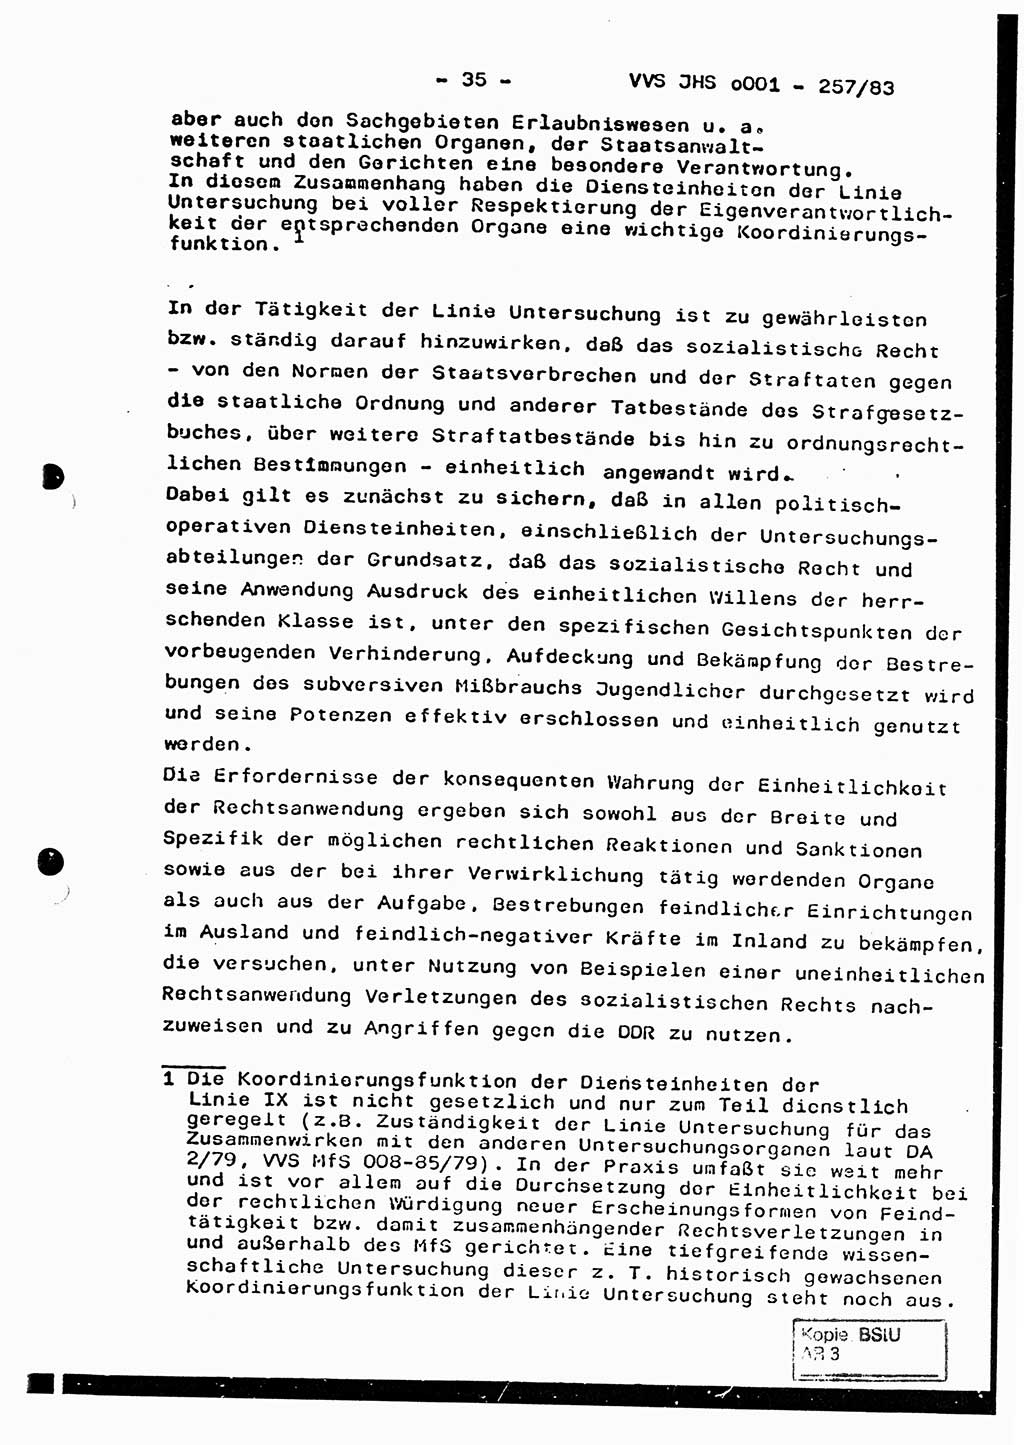 Dissertation, Oberst Helmut Lubas (BV Mdg.), Oberstleutnant Manfred Eschberger (HA IX), Oberleutnant Hans-Jürgen Ludwig (JHS), Ministerium für Staatssicherheit (MfS) [Deutsche Demokratische Republik (DDR)], Juristische Hochschule (JHS), Vertrauliche Verschlußsache (VVS) o001-257/83, Potsdam 1983, Seite 35 (Diss. MfS DDR JHS VVS o001-257/83 1983, S. 35)